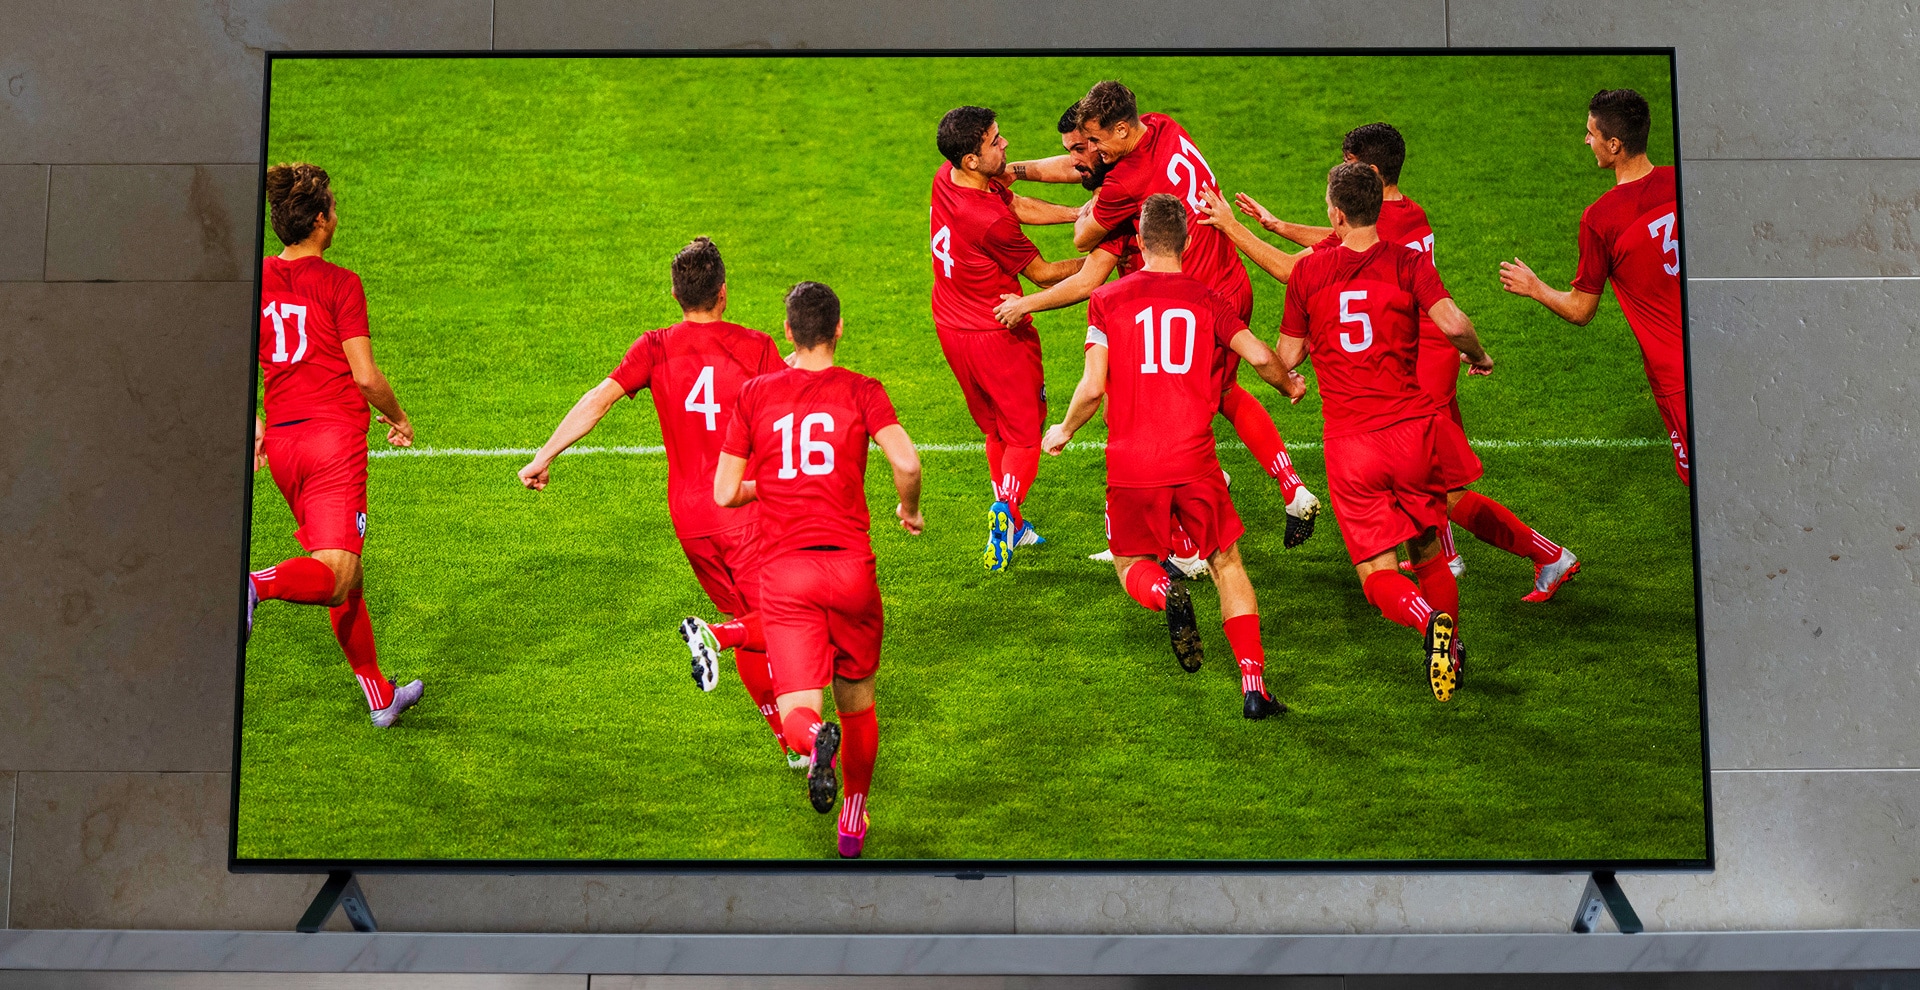 NanoCell TV върху поставка за телевизор. Празнуващи футболисти.